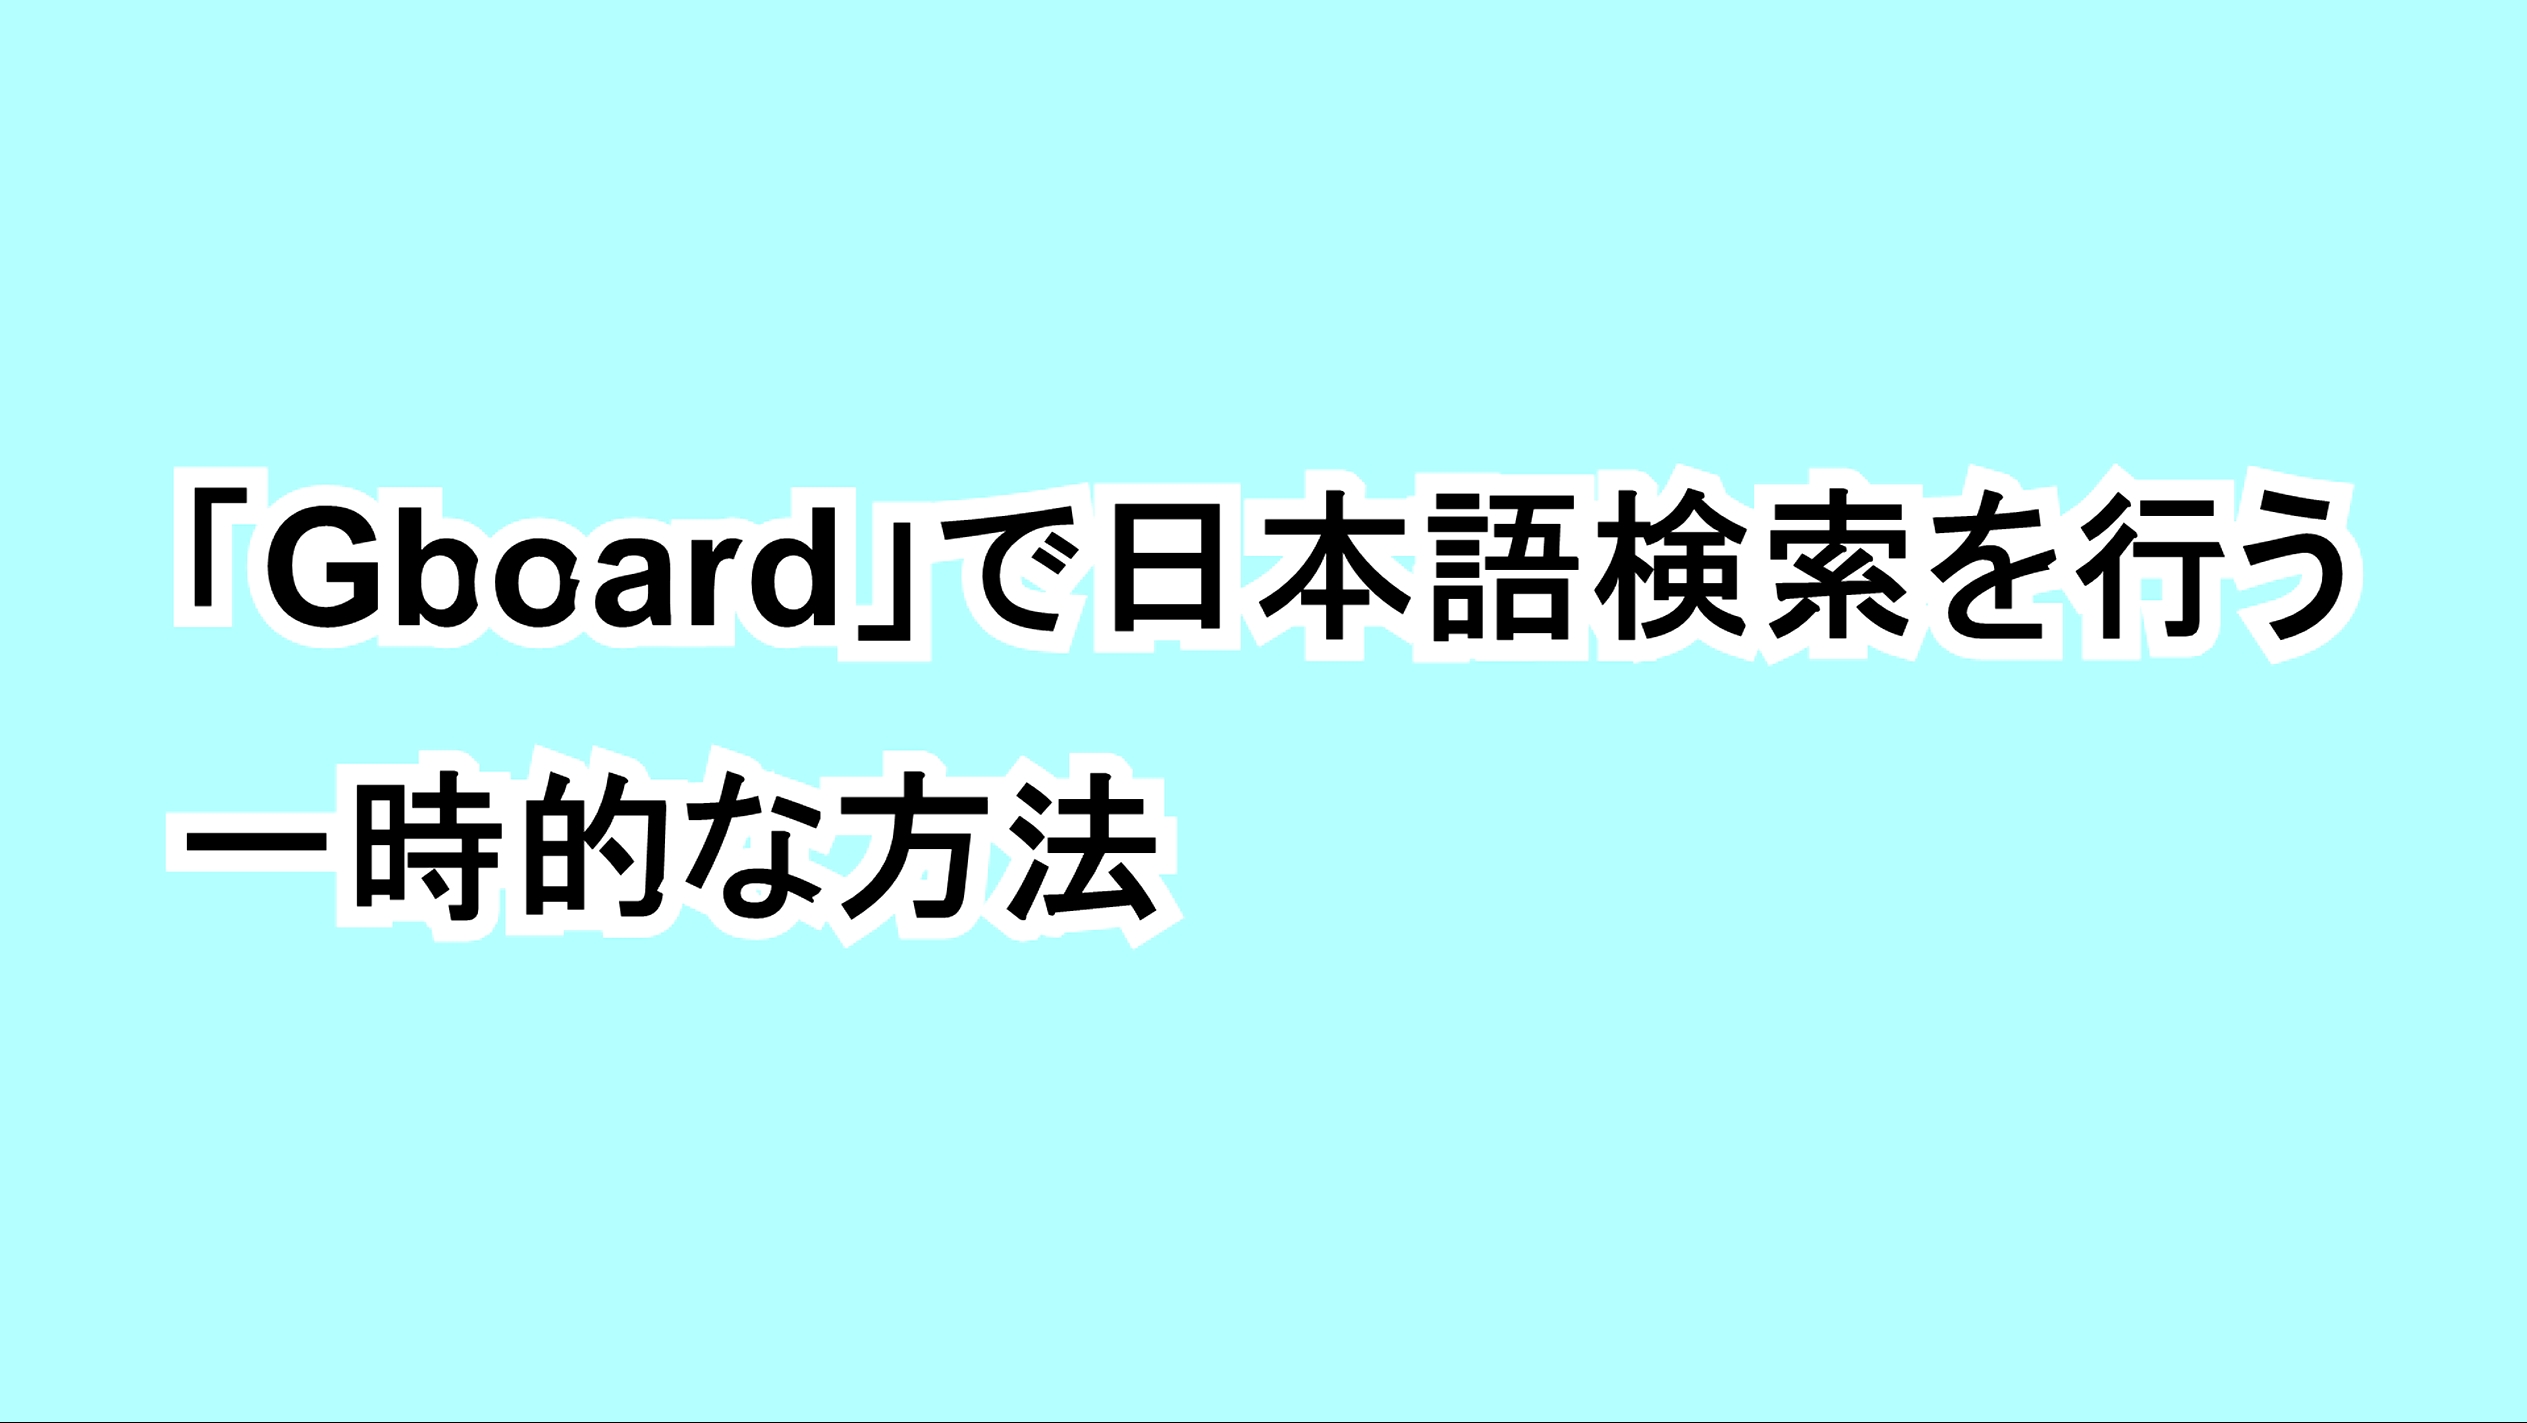 「Gboard」で日本語検索を行う一時的な方法